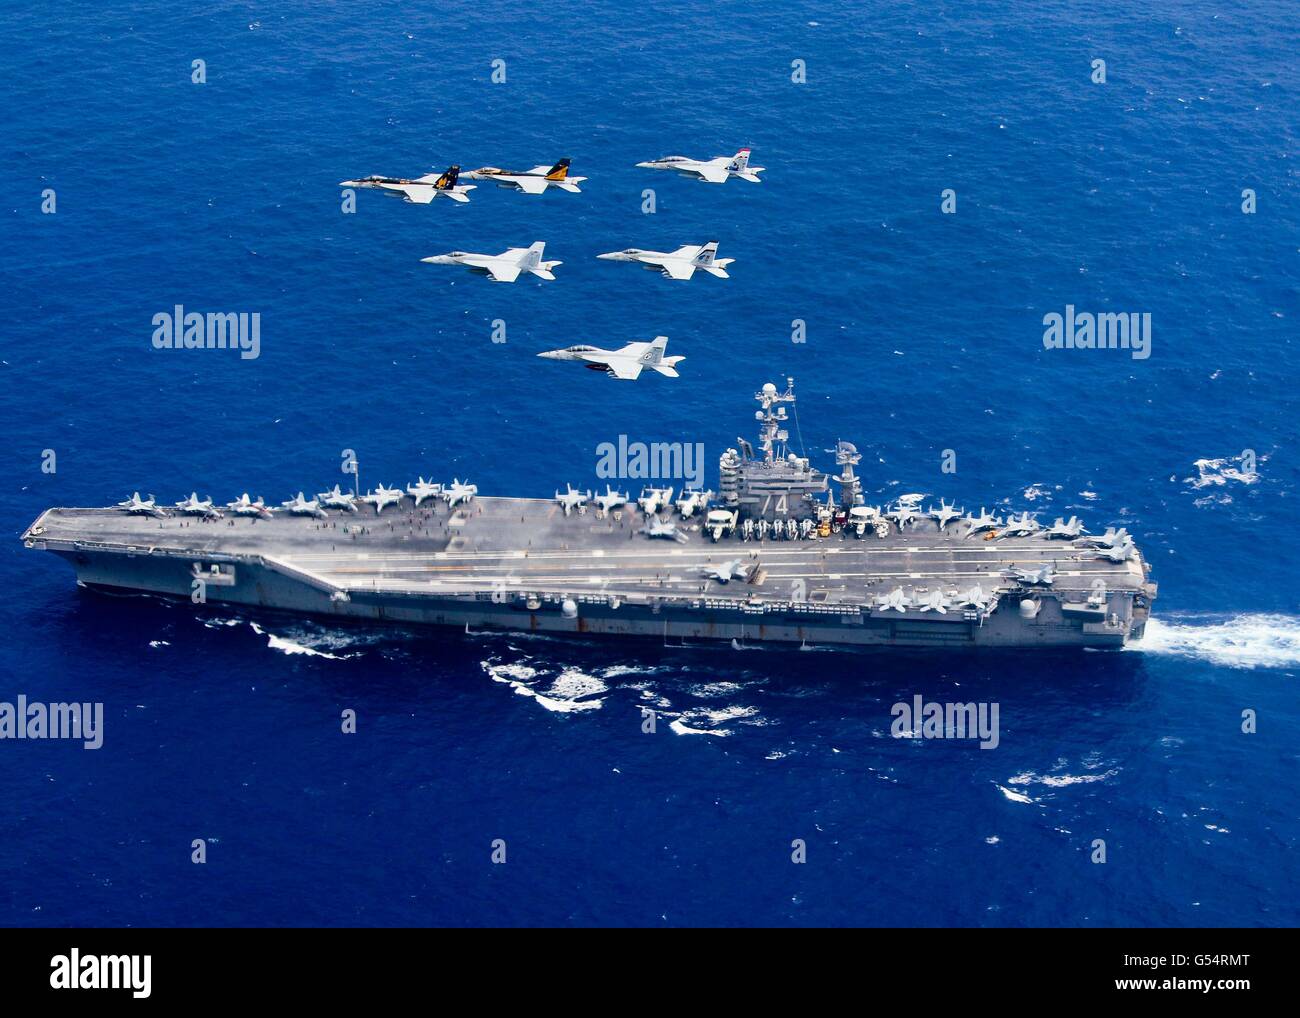 U.S Navy F/A-18 Hornet voler en formation au cours de la classe Nimitz supercarrier à propulsion nucléaire USS John C. Stennis pendant les opérations de double avec le groupe aéronaval du USS Ronald Reagan, le 18 juin 2016 dans la mer des Philippines. Banque D'Images